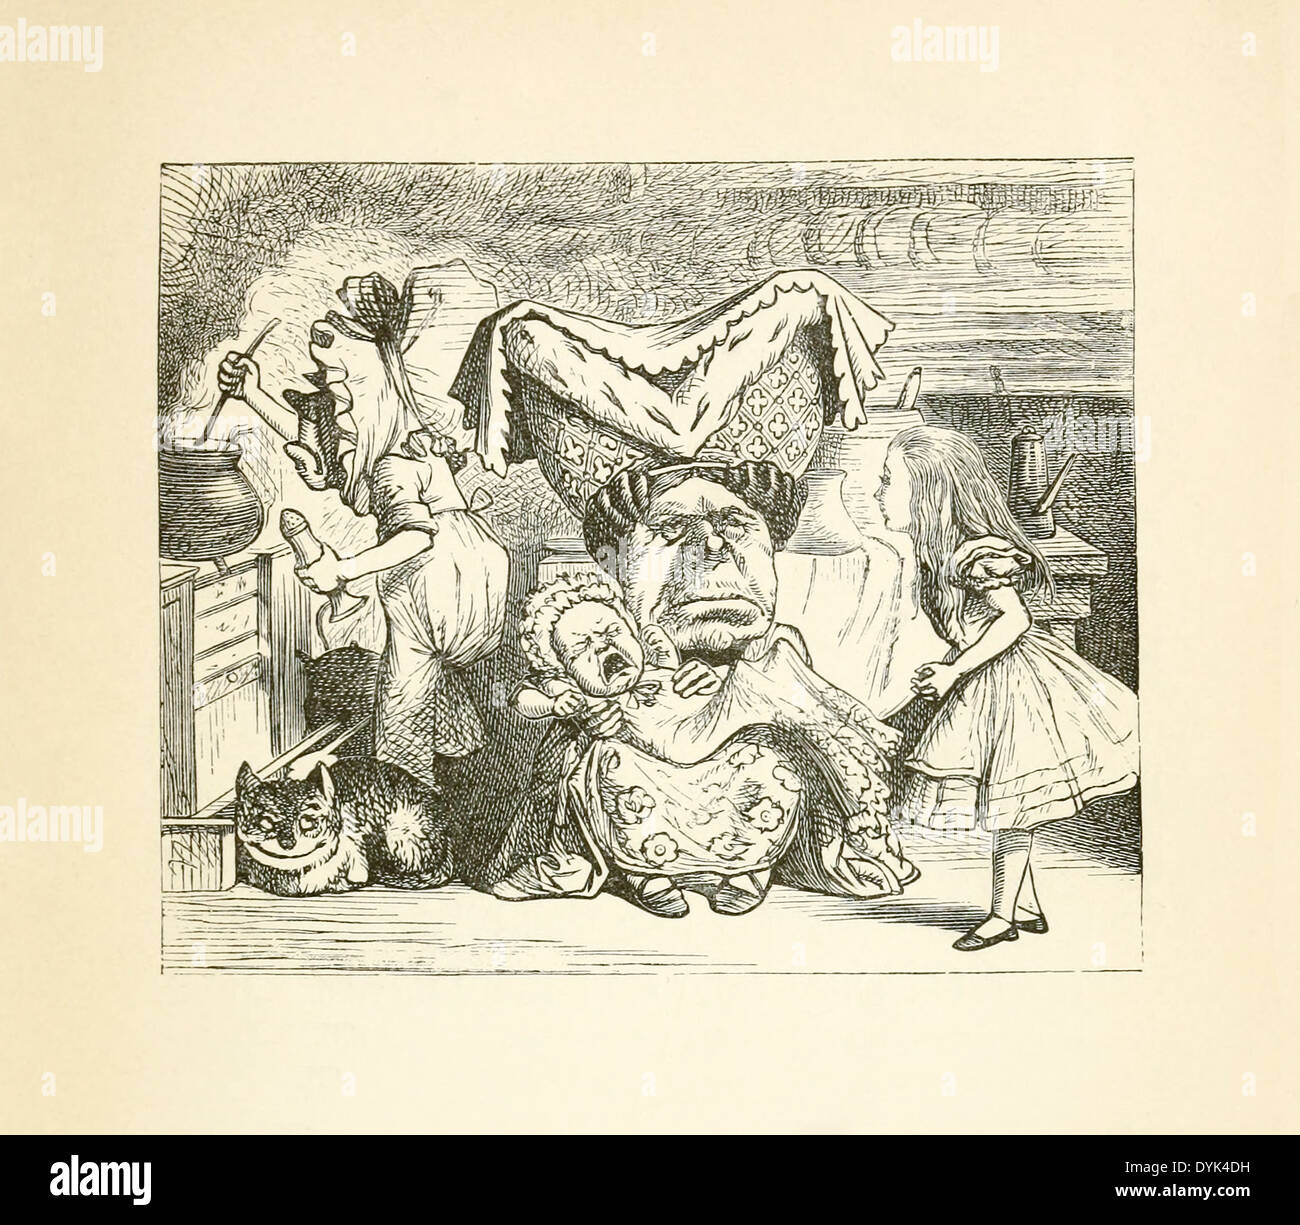 John Tenniel (1820-1914) Illustration de Lewis Carroll, "Alice au pays des merveilles' publié en 1865. La duchesse d'infirmière. Banque D'Images